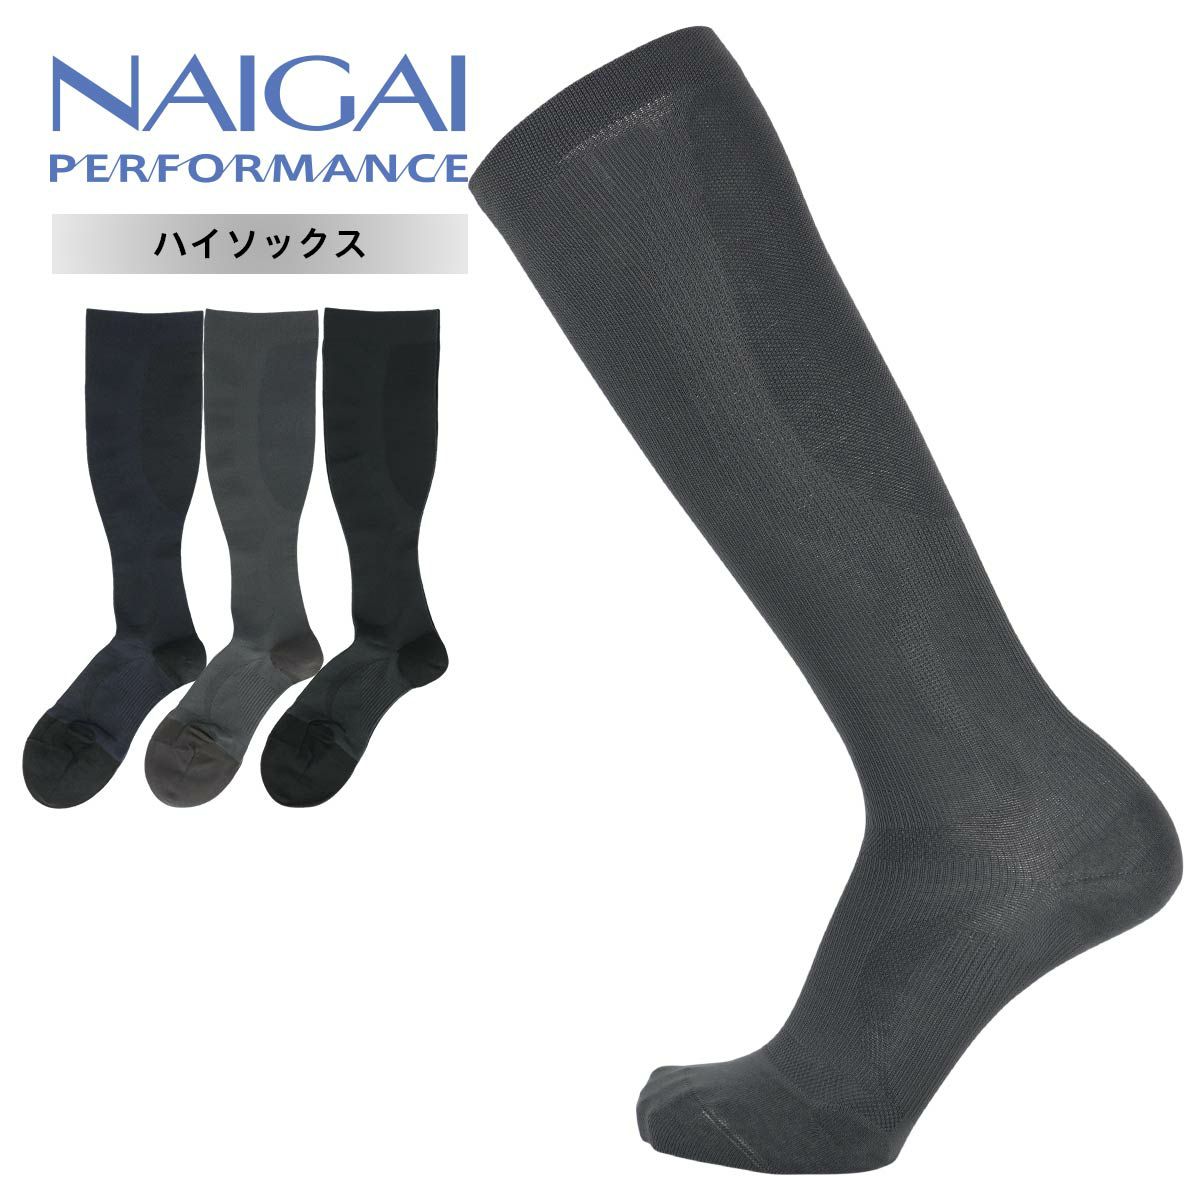 NAIGAI PERFORMANCE ナイガイ パフォーマンス メンズ ソックス 日本製